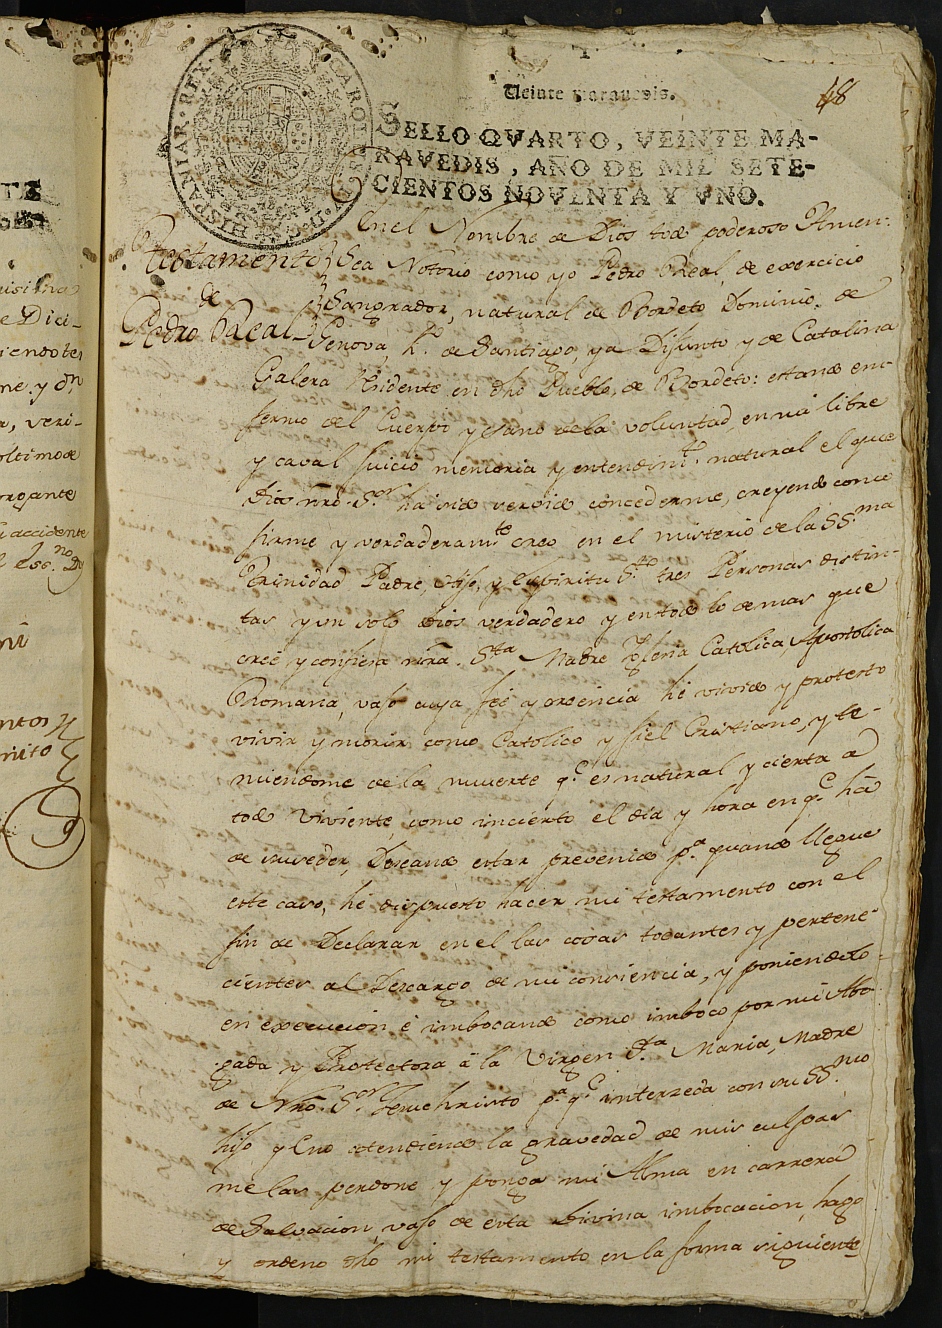 Registro de Agustín Carlos Roca, Cartagena: Escribano de Marina. Años 1789-1794.